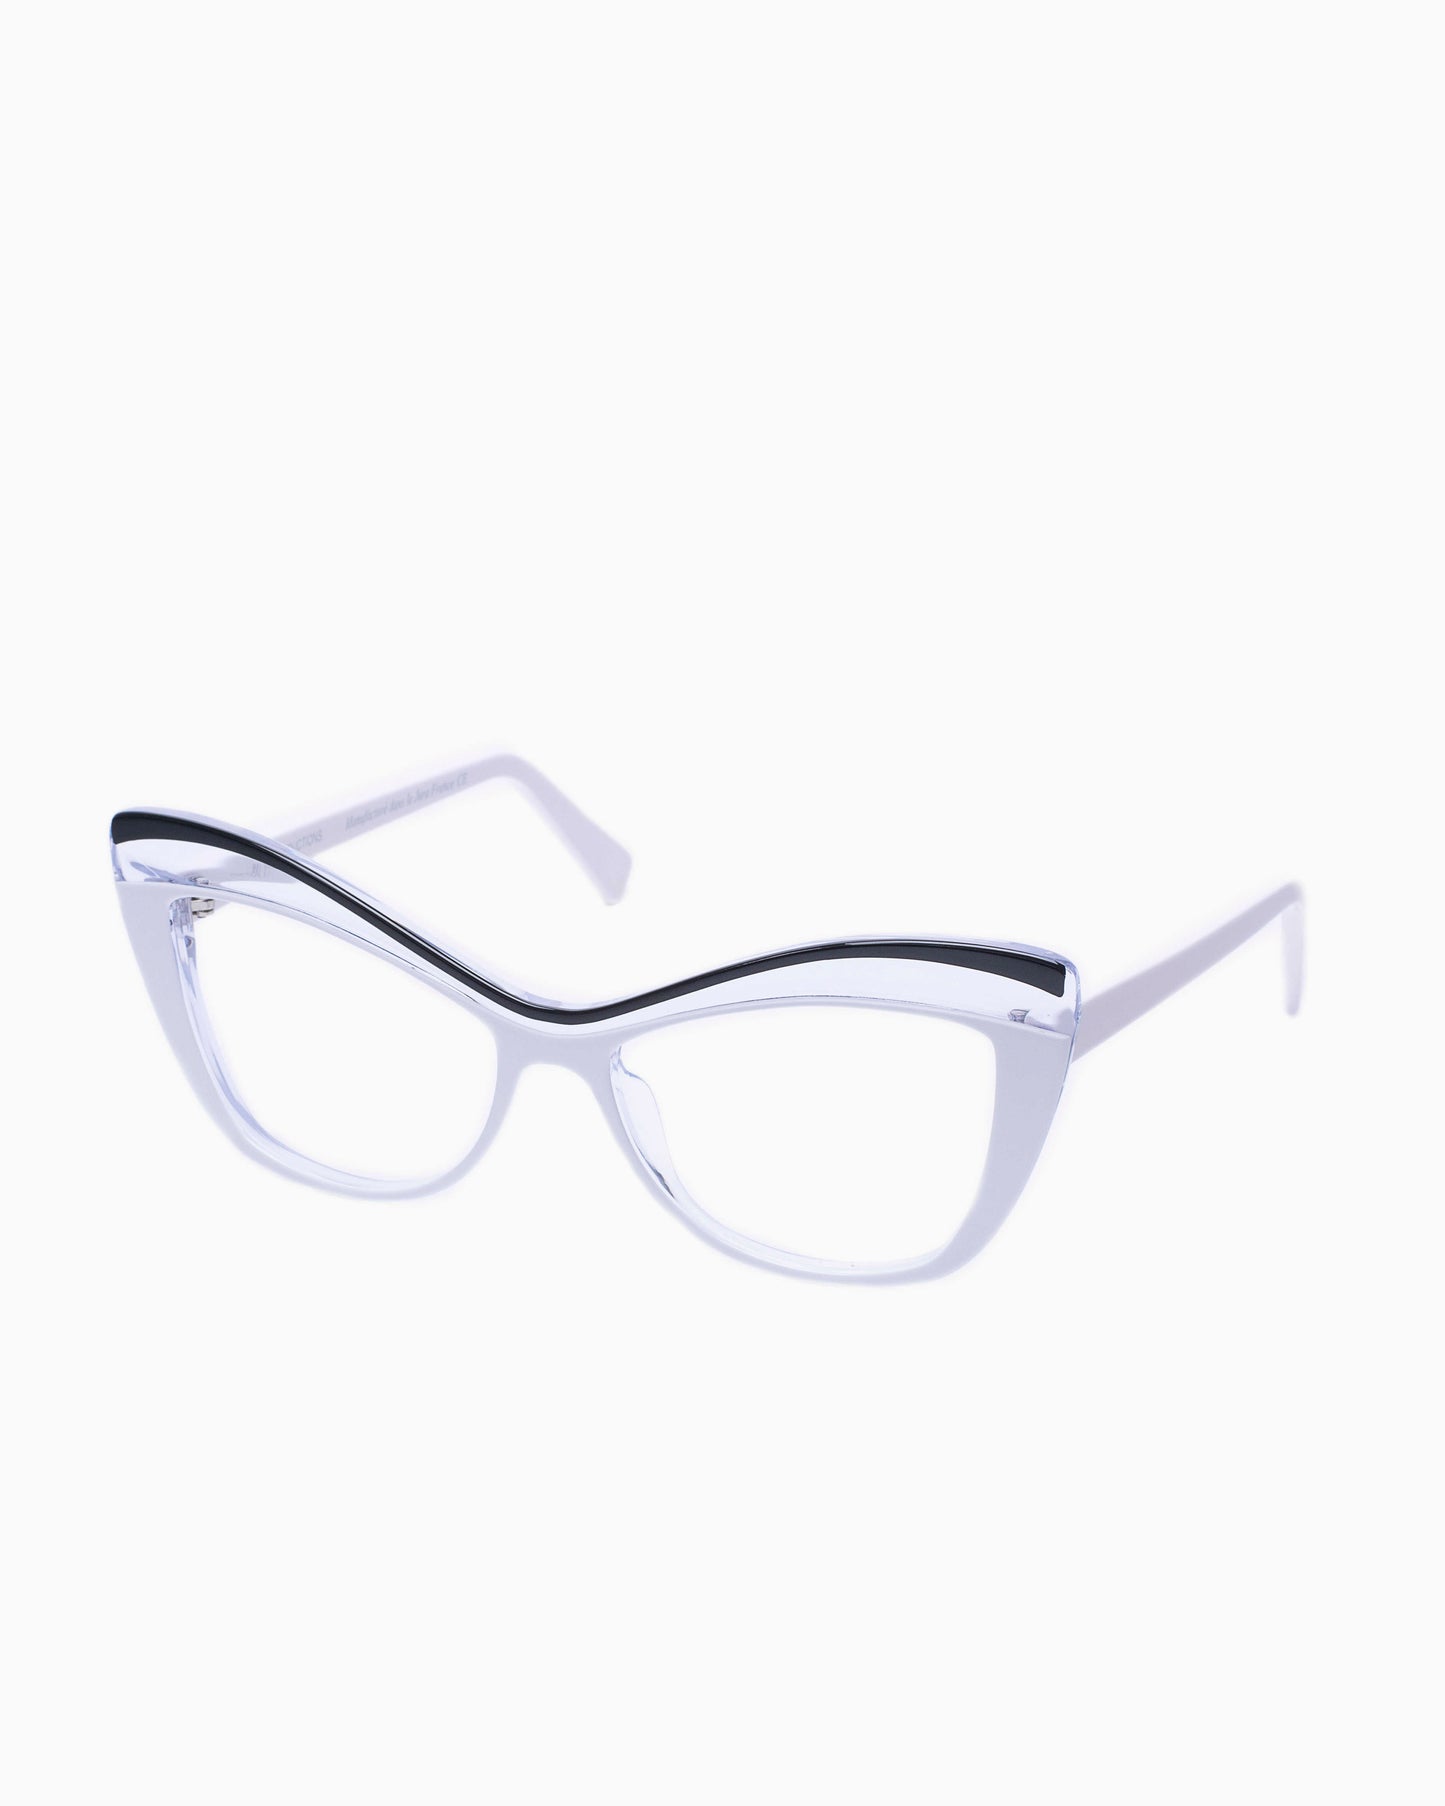 TRACTION - PEGGY - BlancNoir | Bar à lunettes